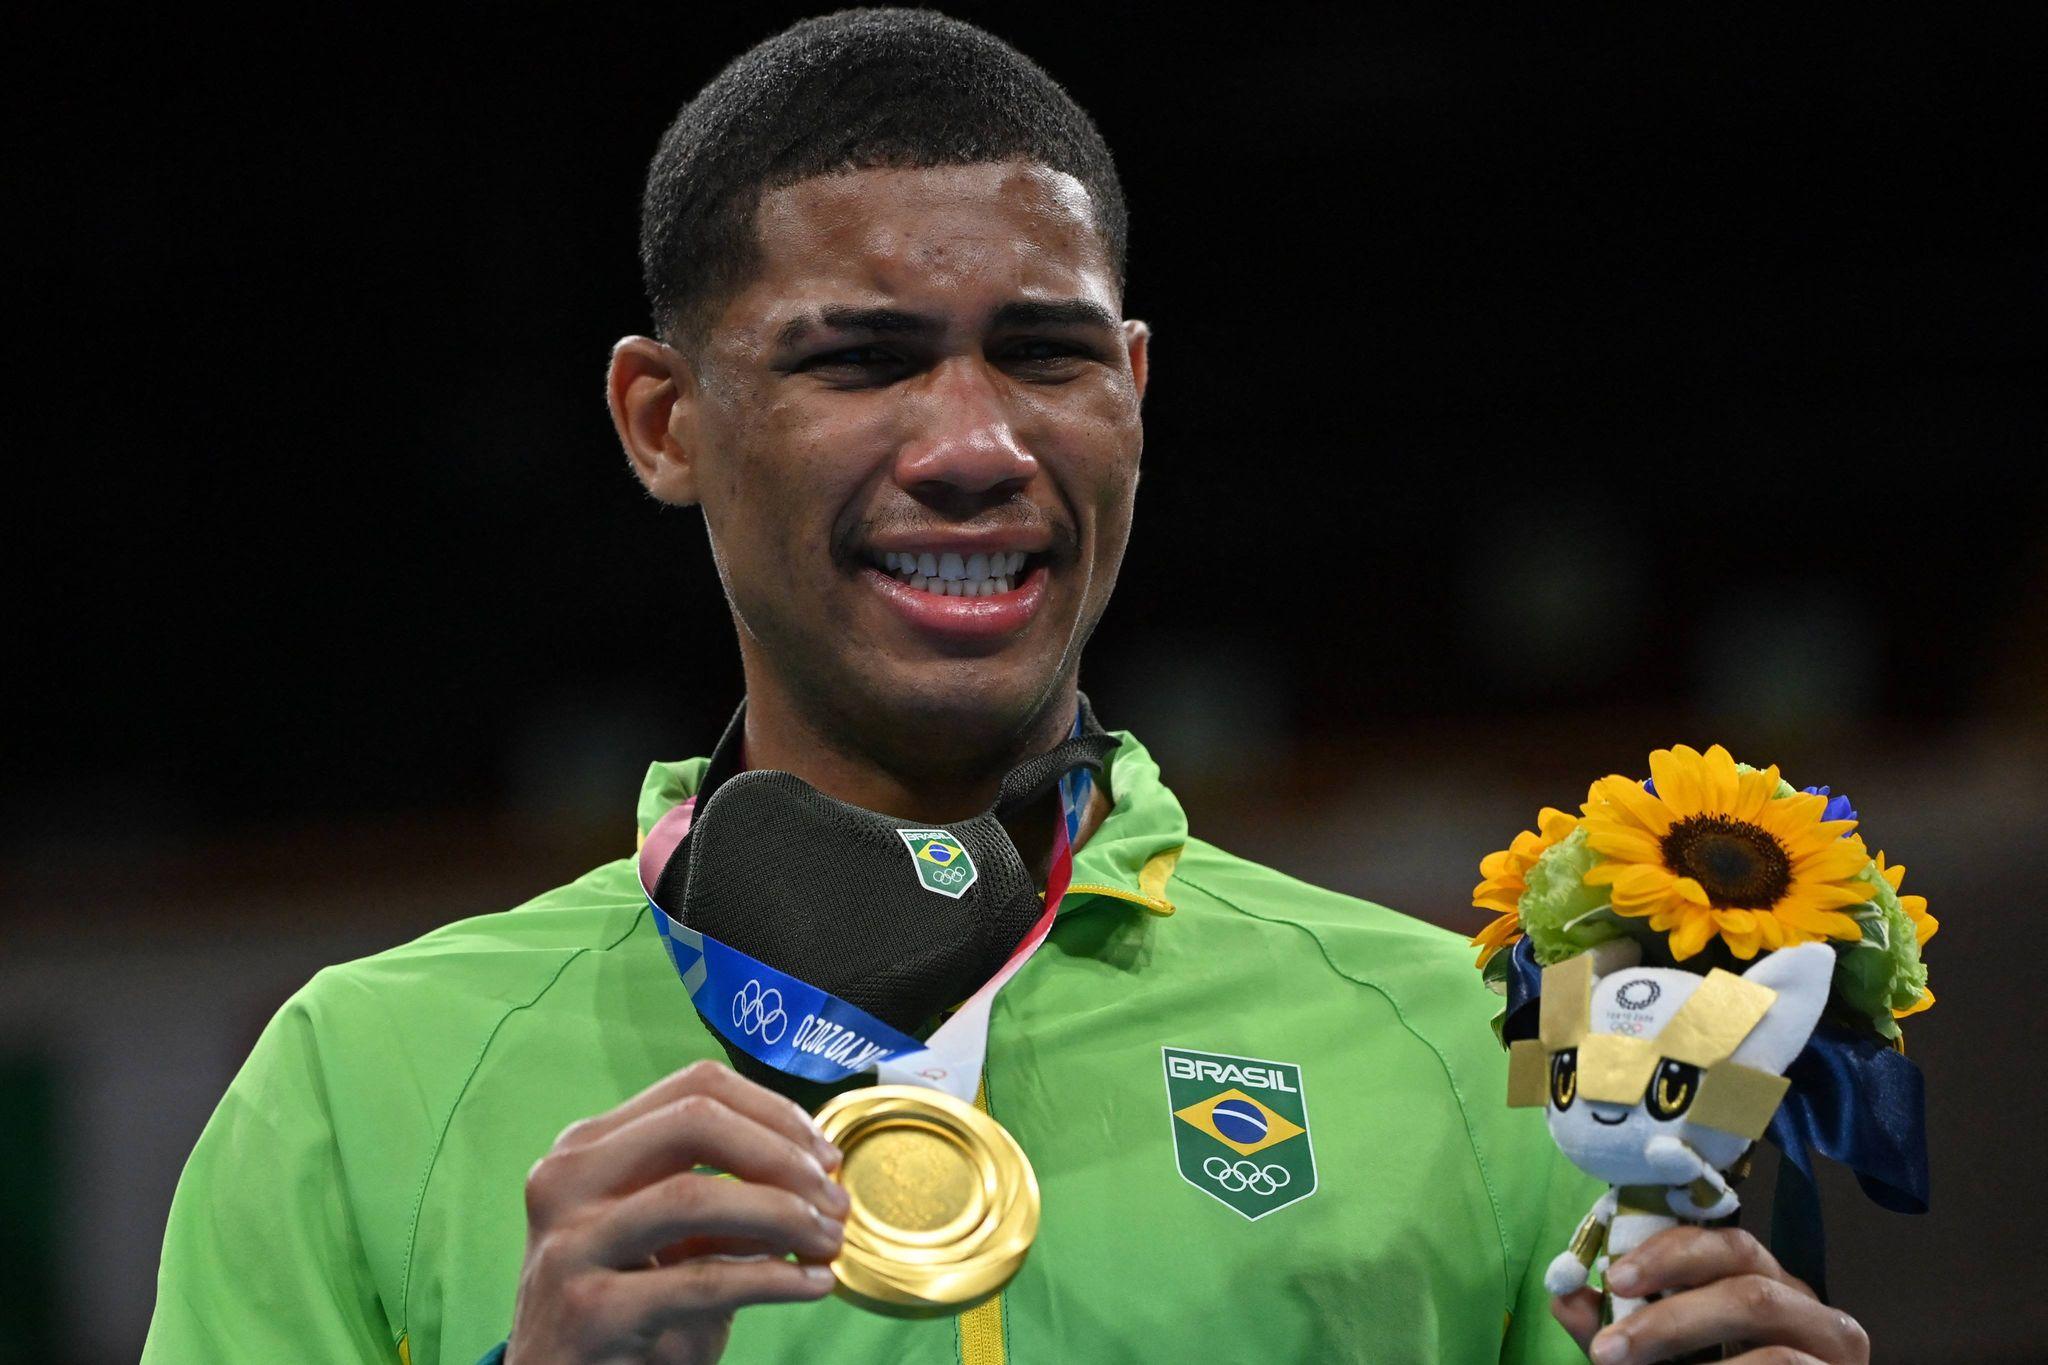 Hebert Conceição exibe medalha olímpica